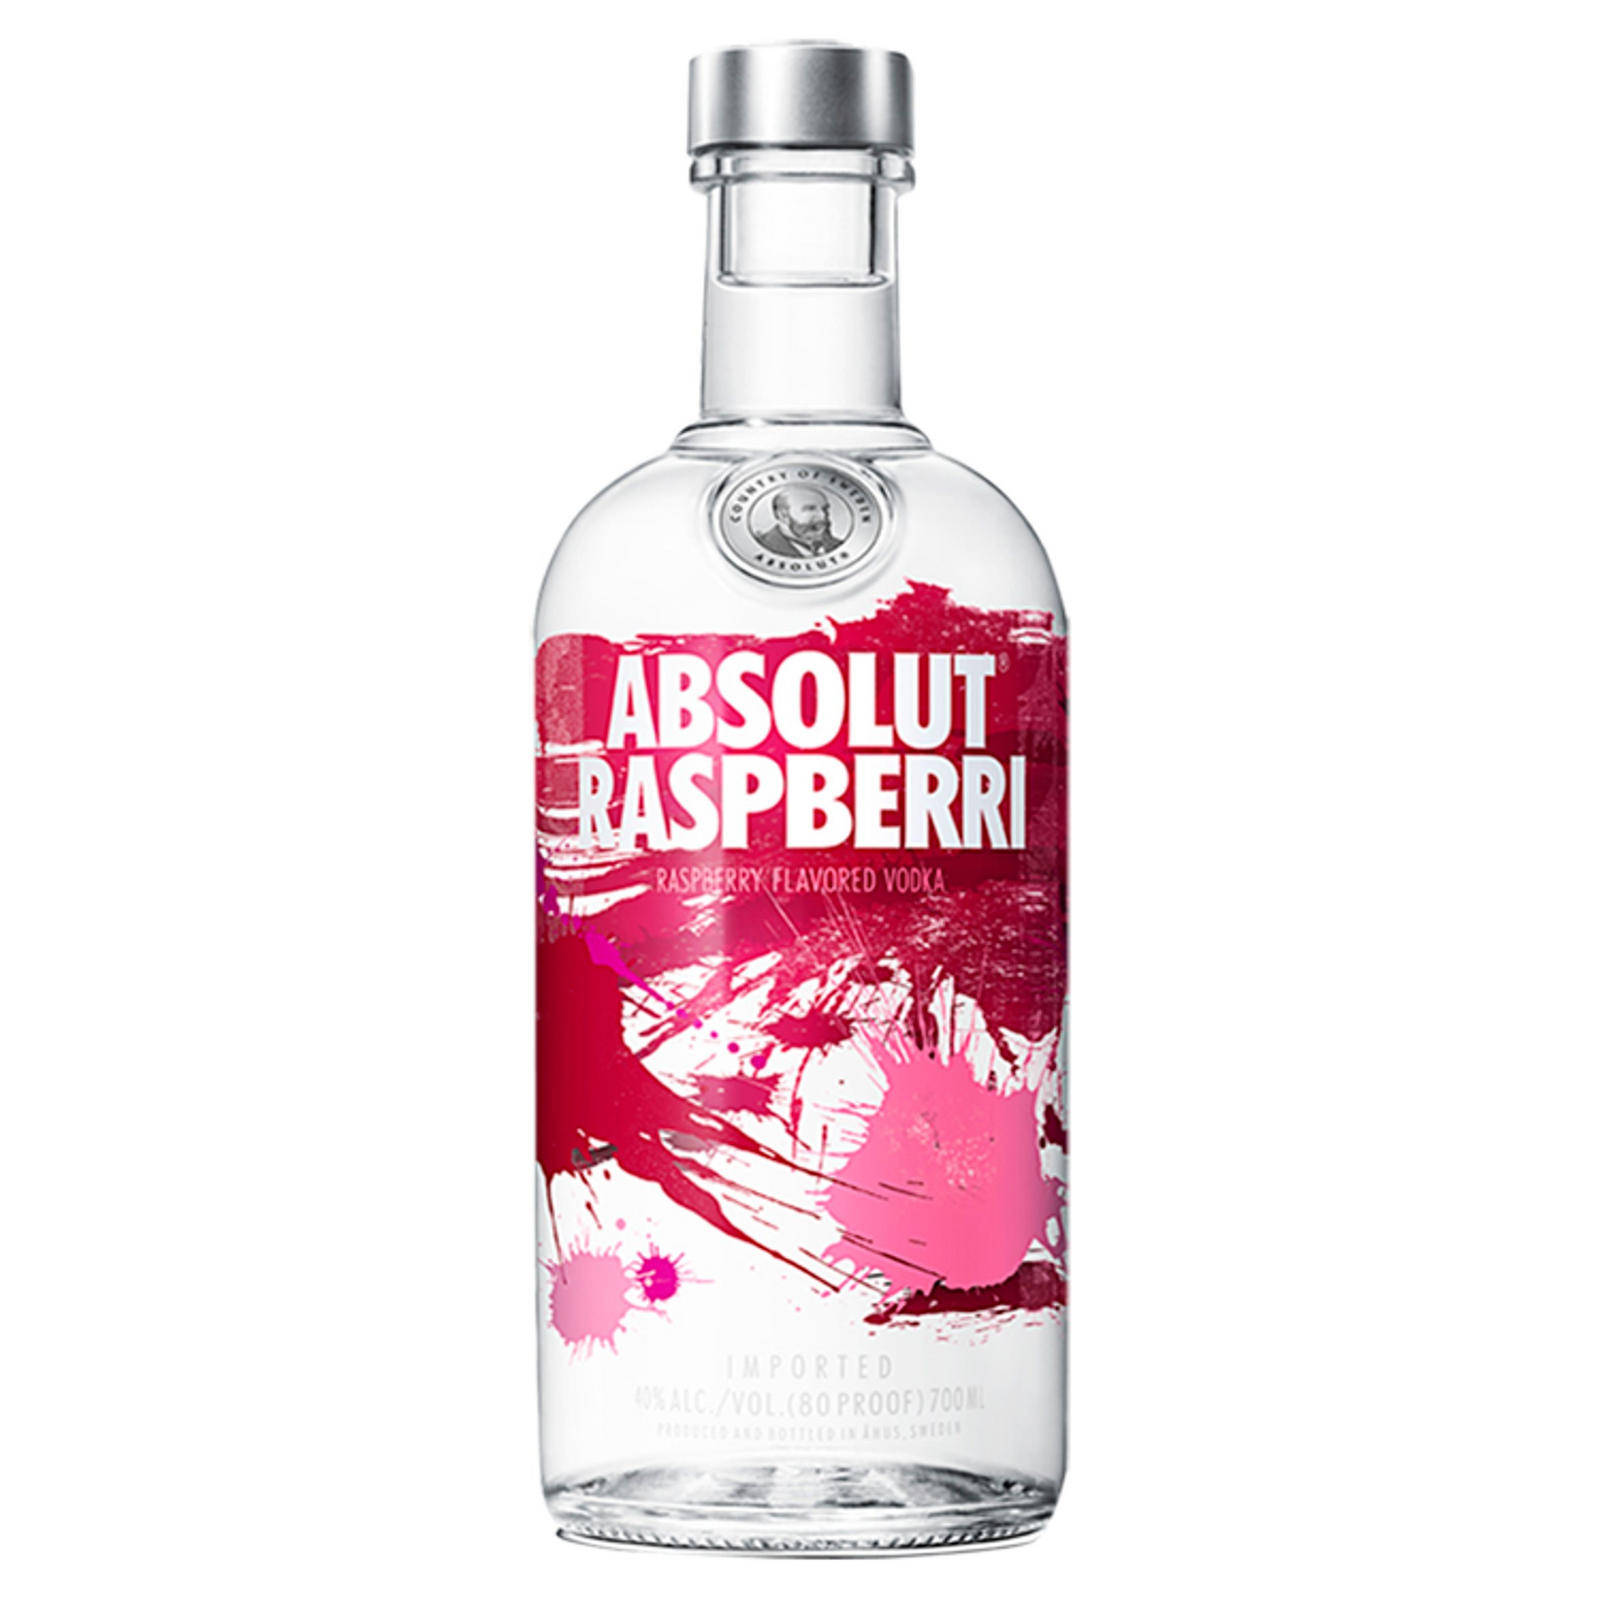 Absolut Raspberri Vodka Bottle on a White Background Wallpaper